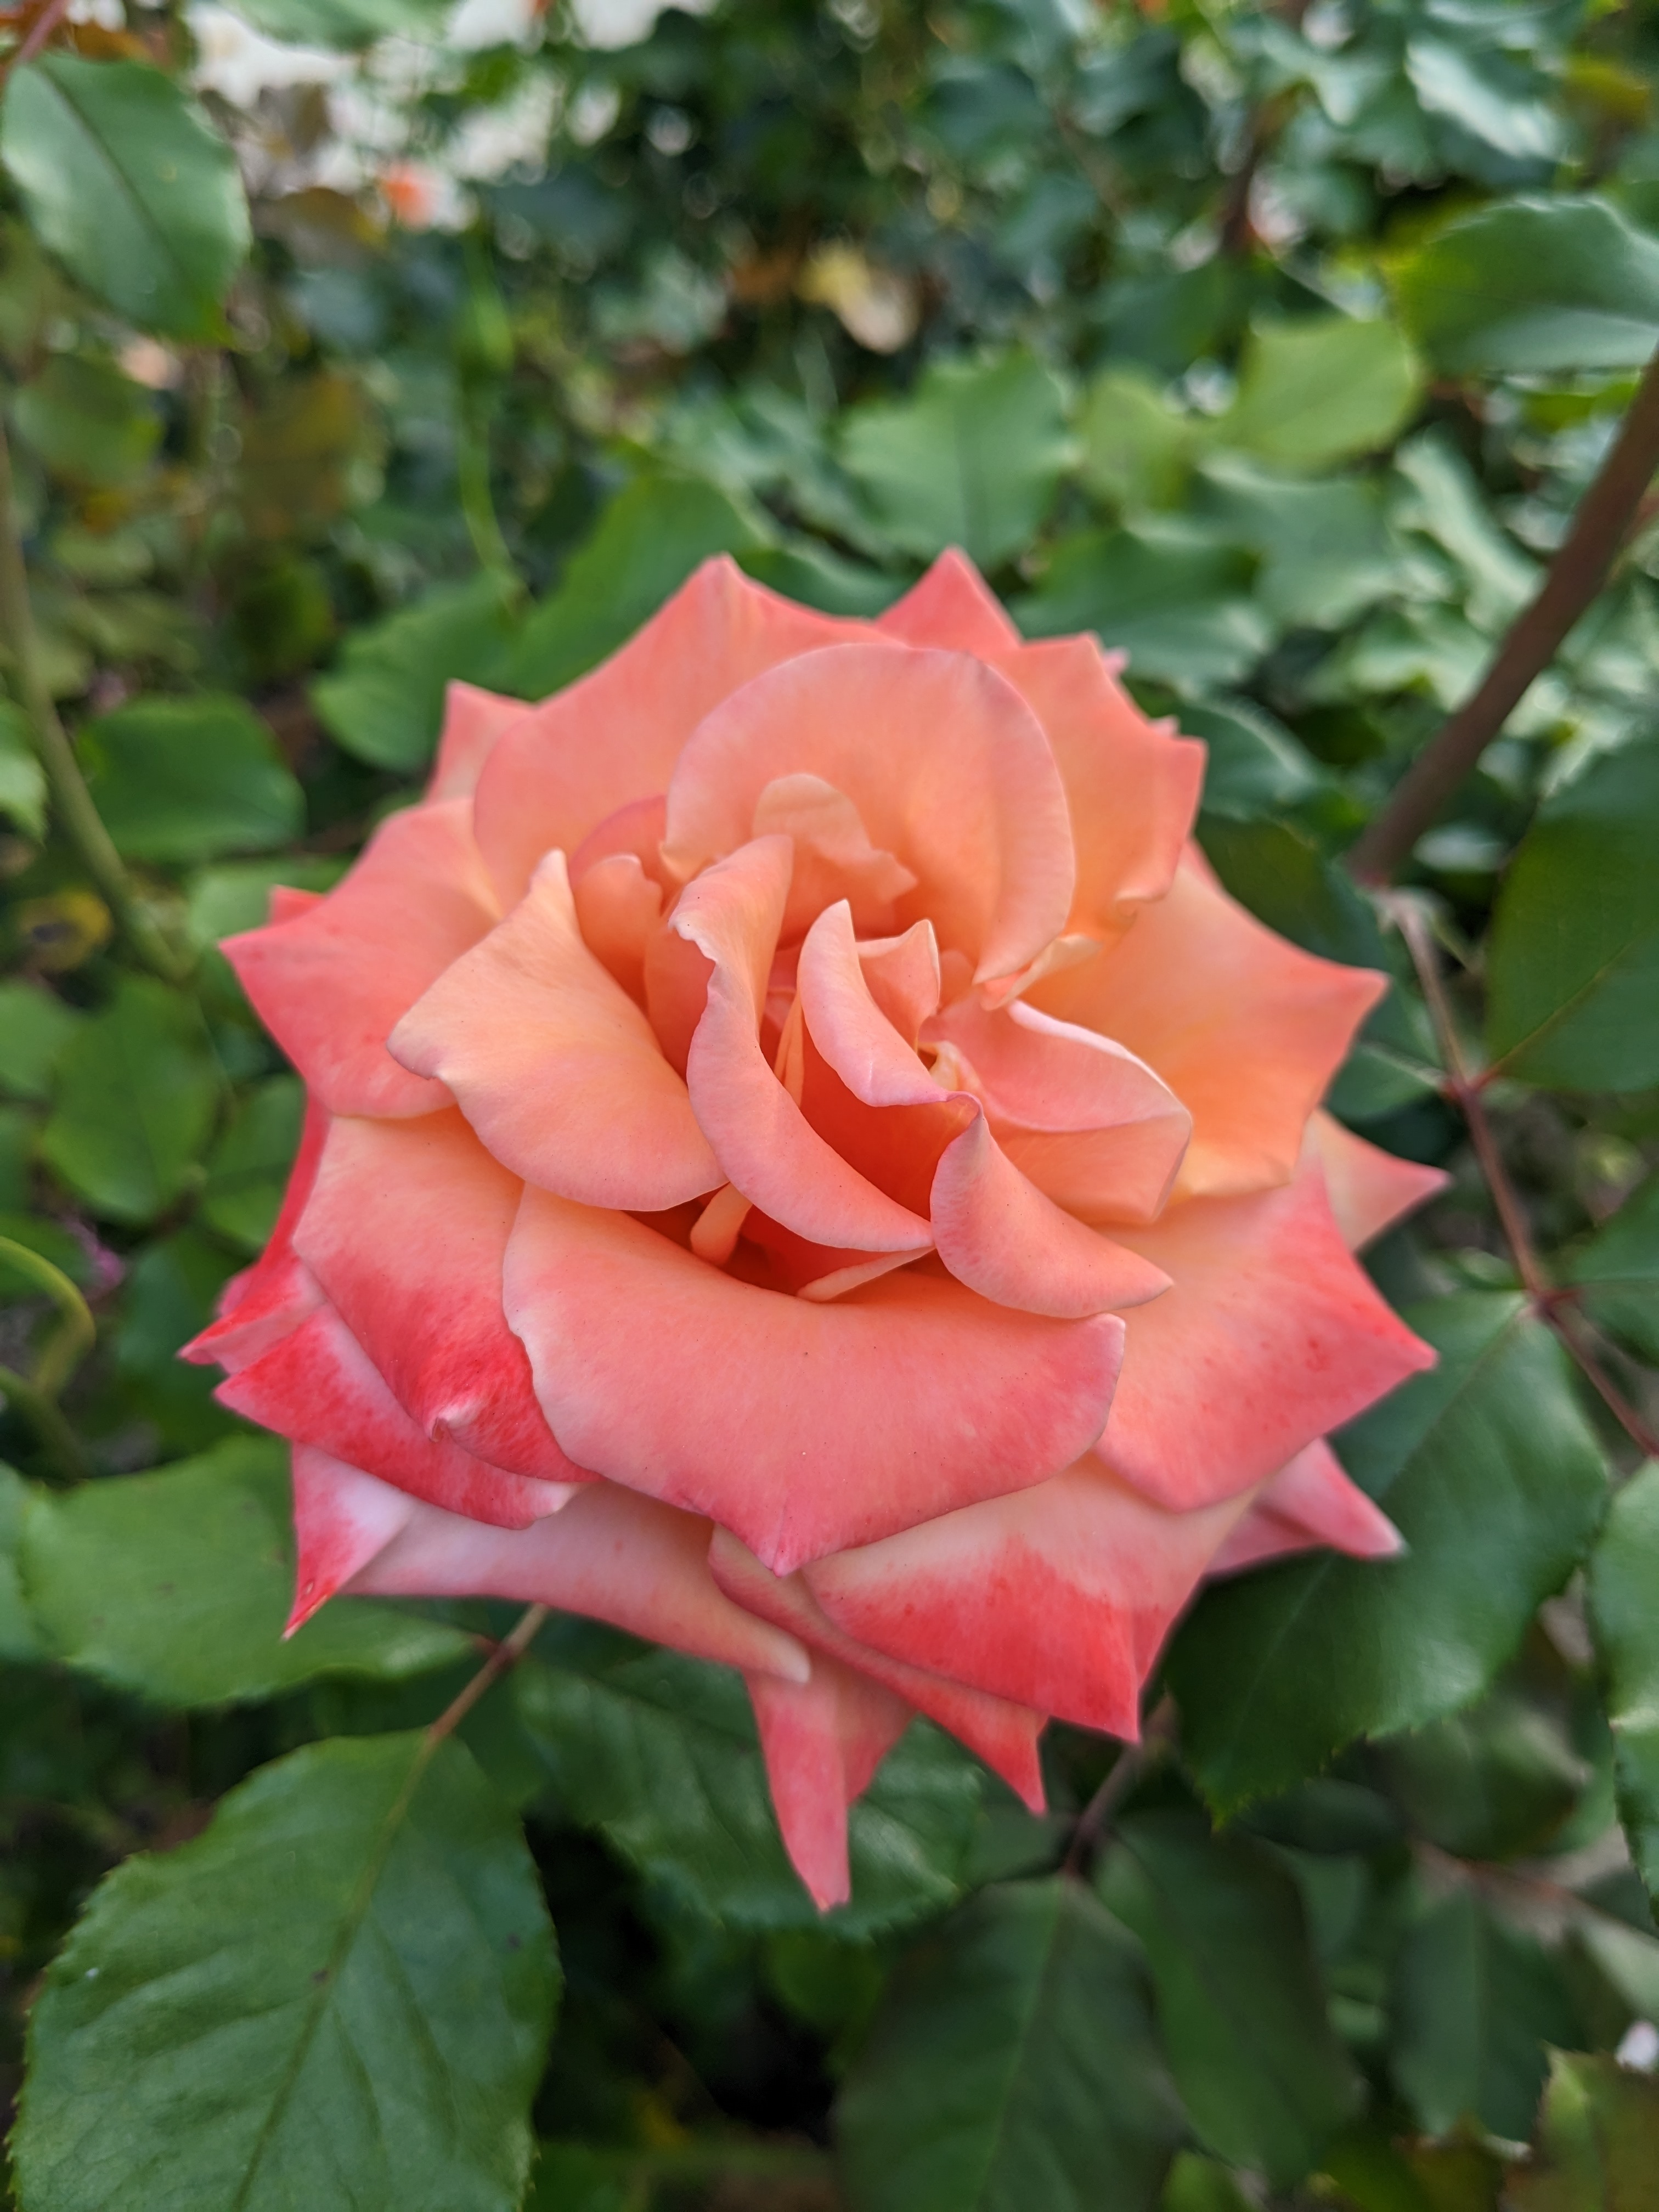 Pink orange flower taken with Google Pixel 6a main camera